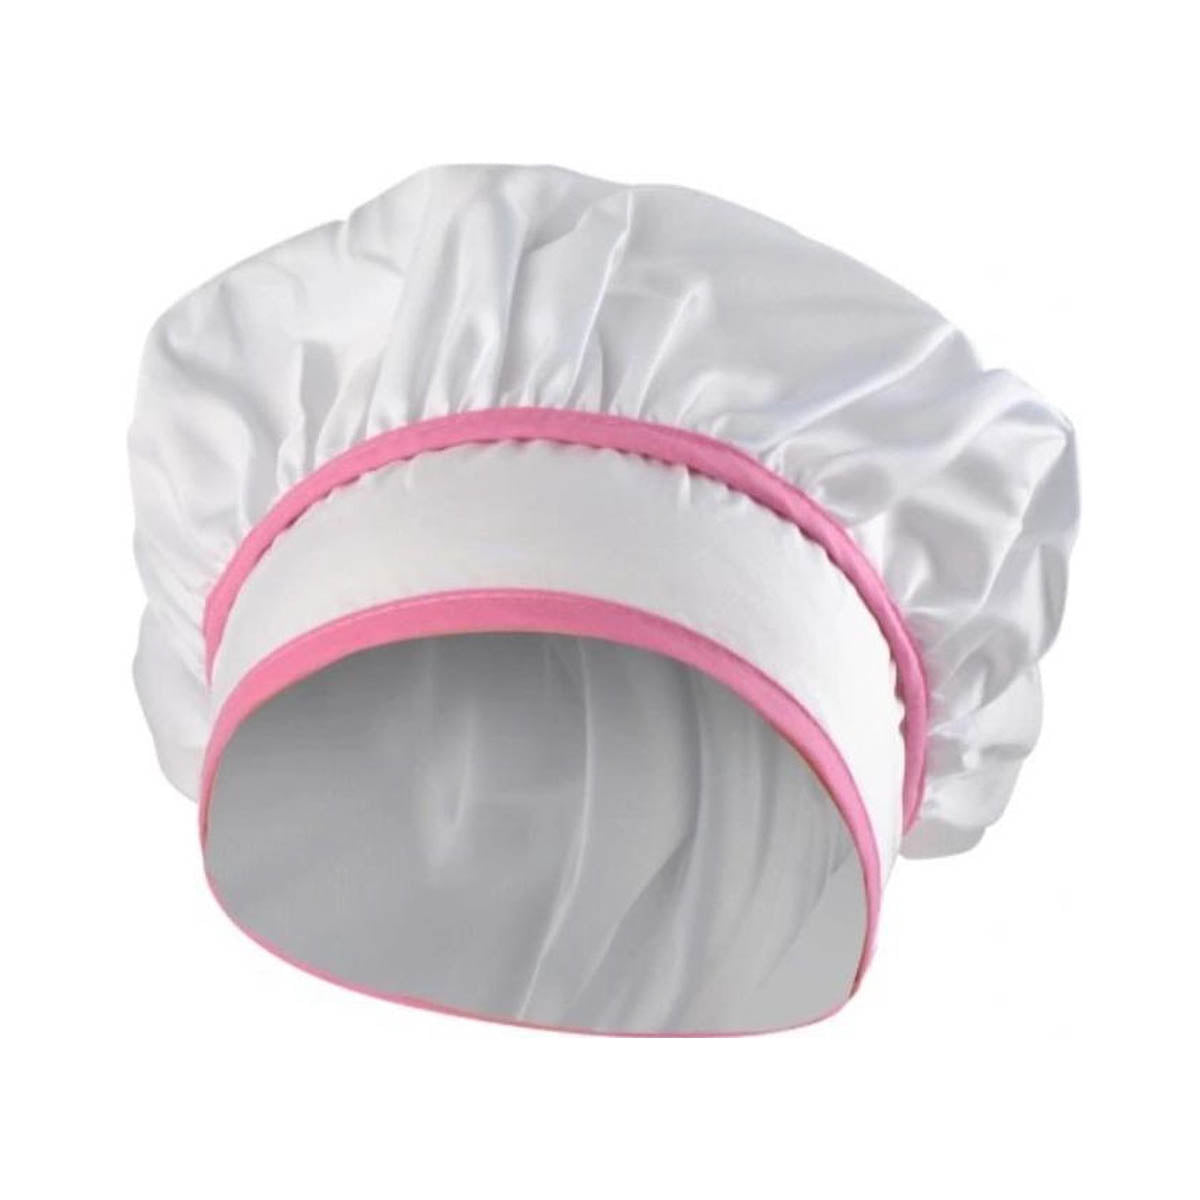 Ariko Luxus-Küchenchef-Spielset | Küchenschürze Pink inkl. Kochhaube, Ofenhandschuh, Schneebesen, Nudelholz & Pfannenwender | Kochset | Rollenspiel | In schöner Geschenkbox |